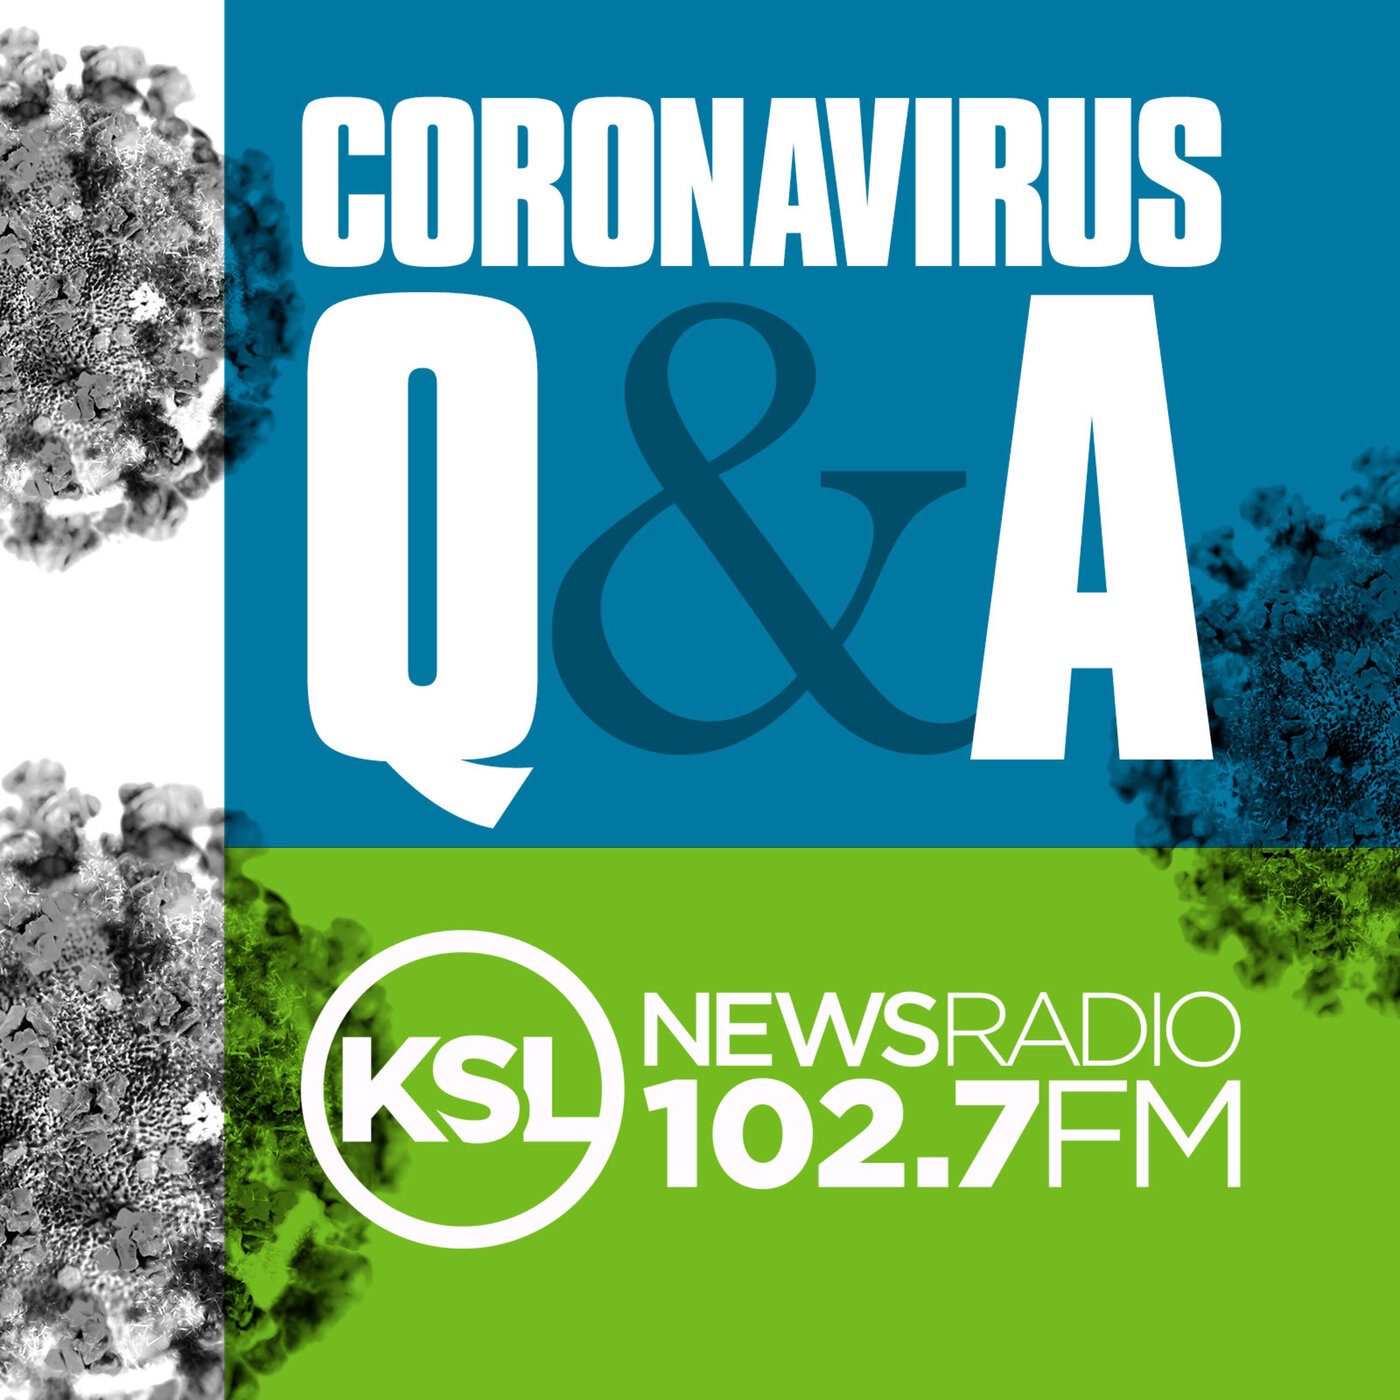 Coronavirus Update October 29th